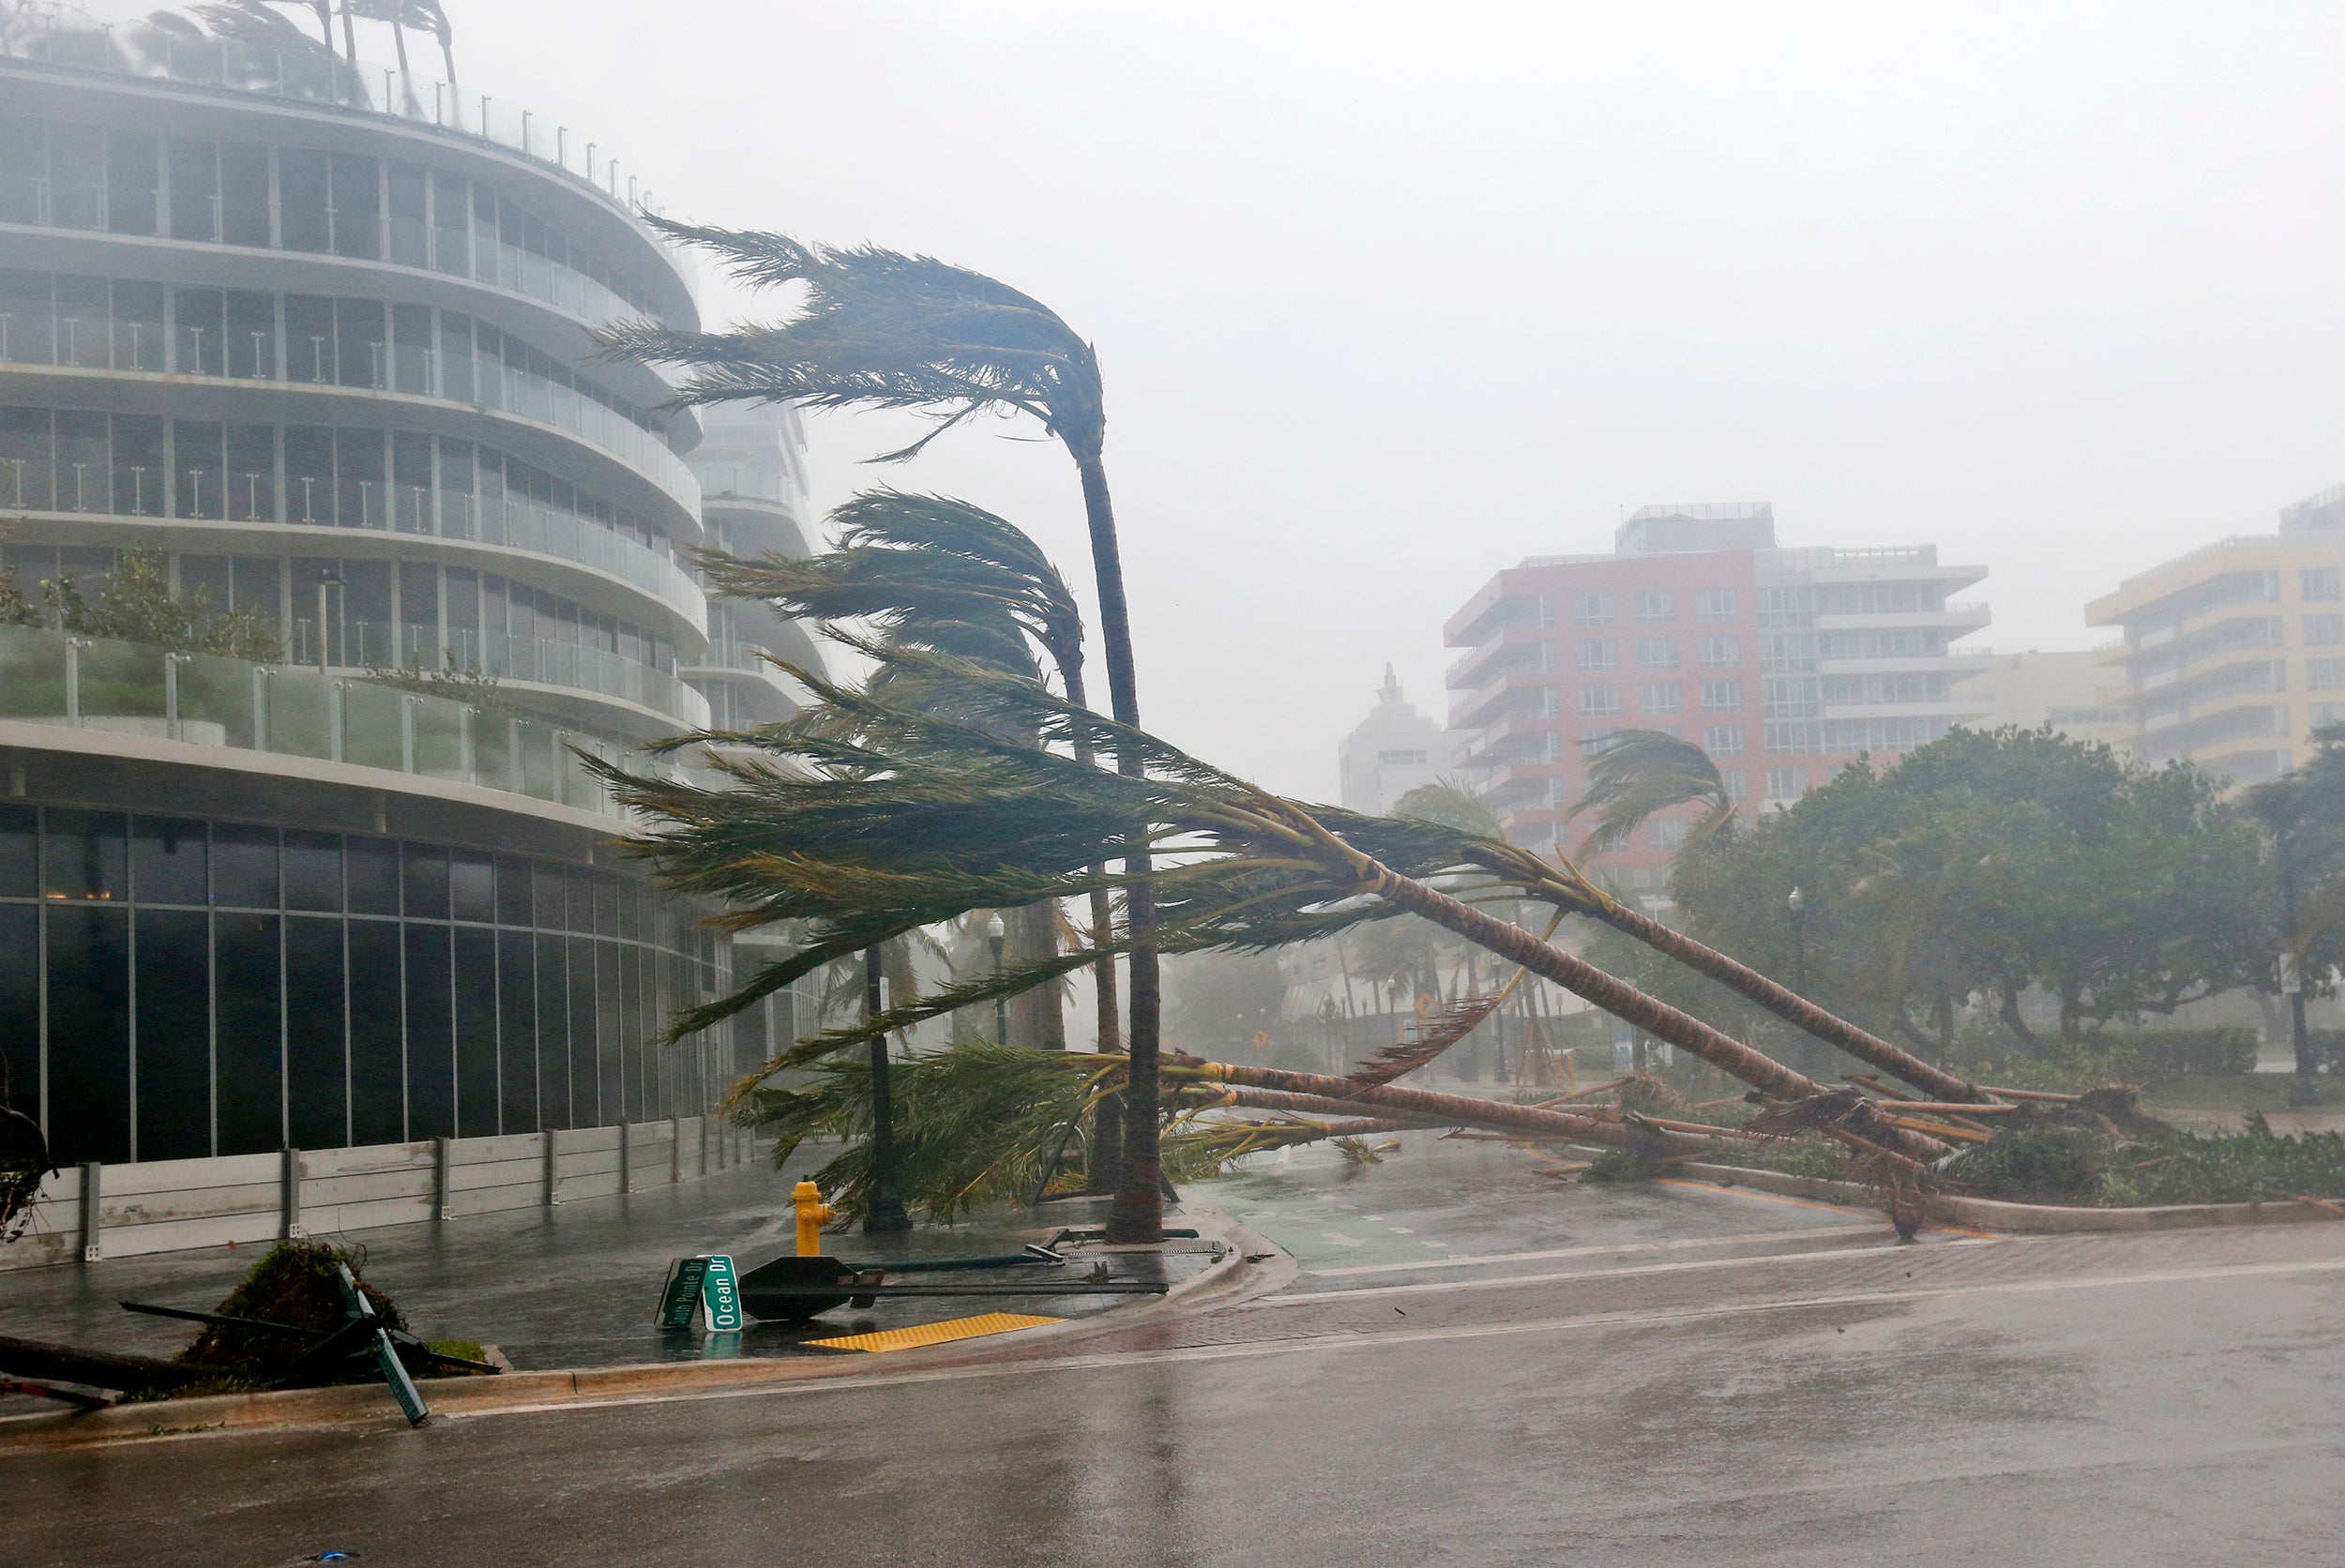 Hurricane Irma battered Miami Beach in 2017